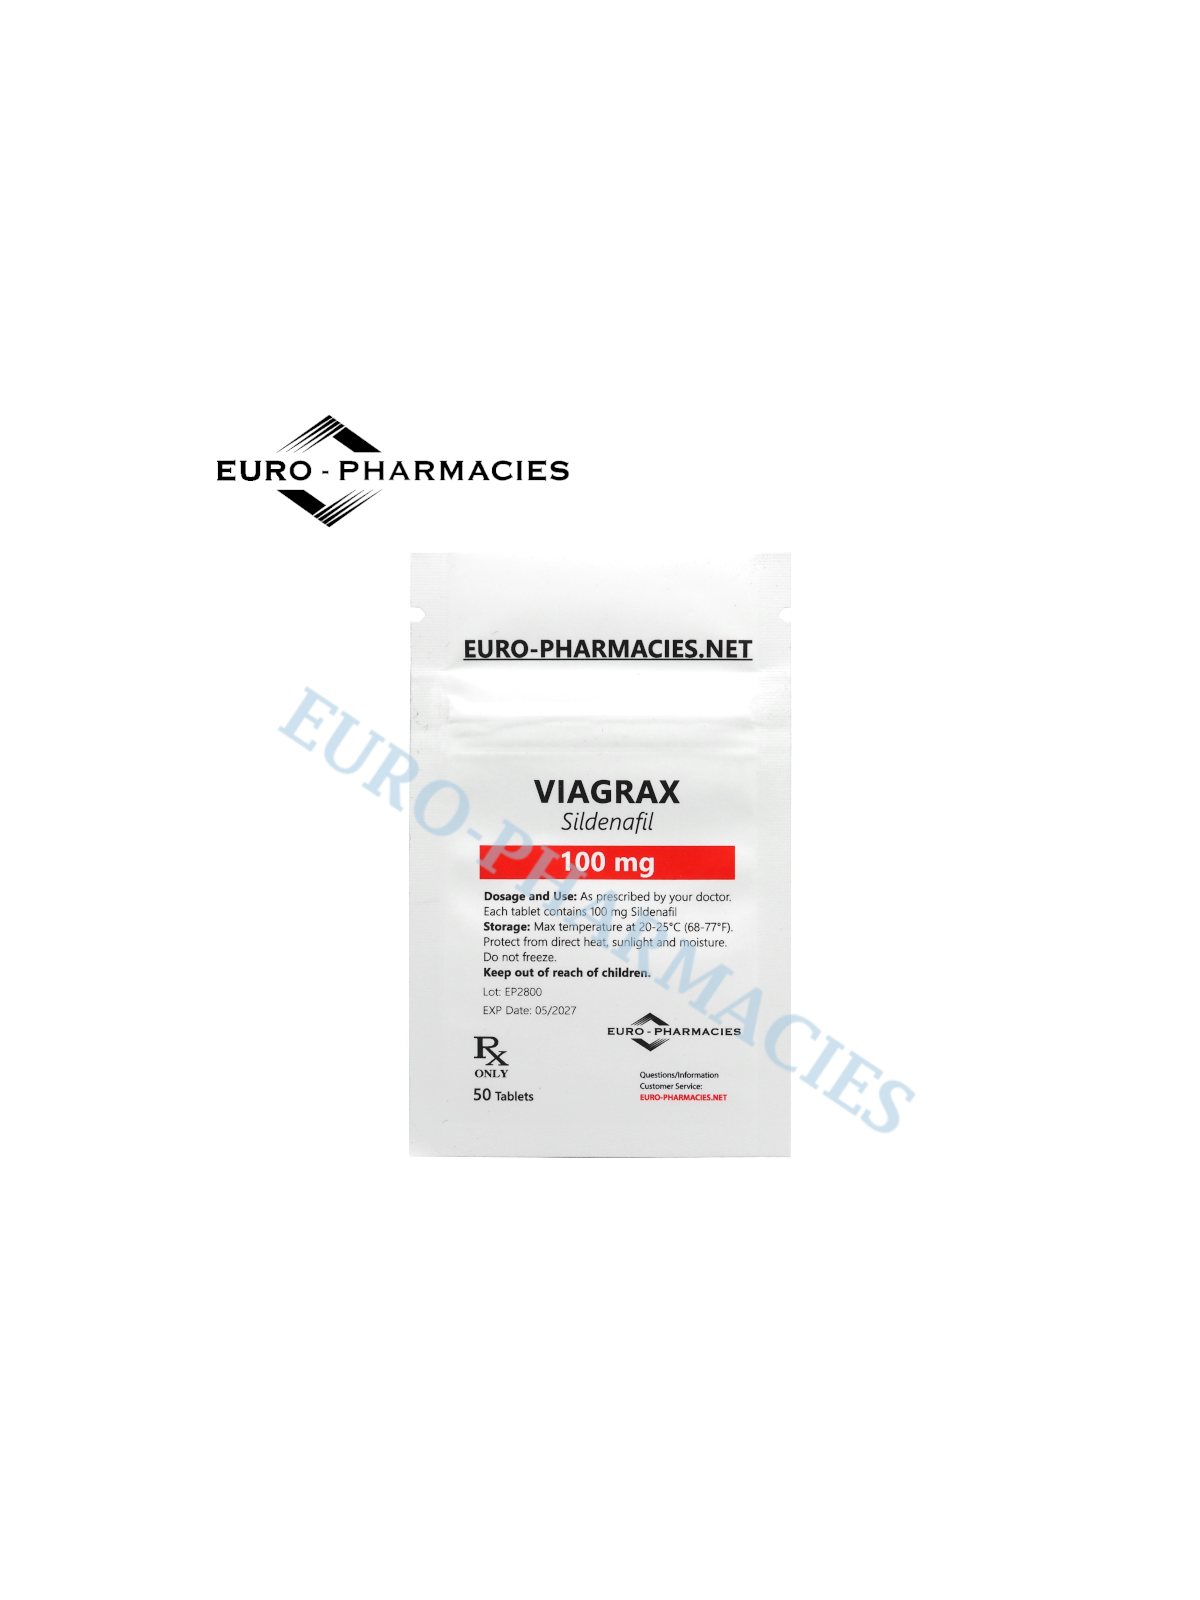 Viagrax (Sildenafil) - 100mg/tab, 50 pills/bag - Euro-Pharmacies - USA